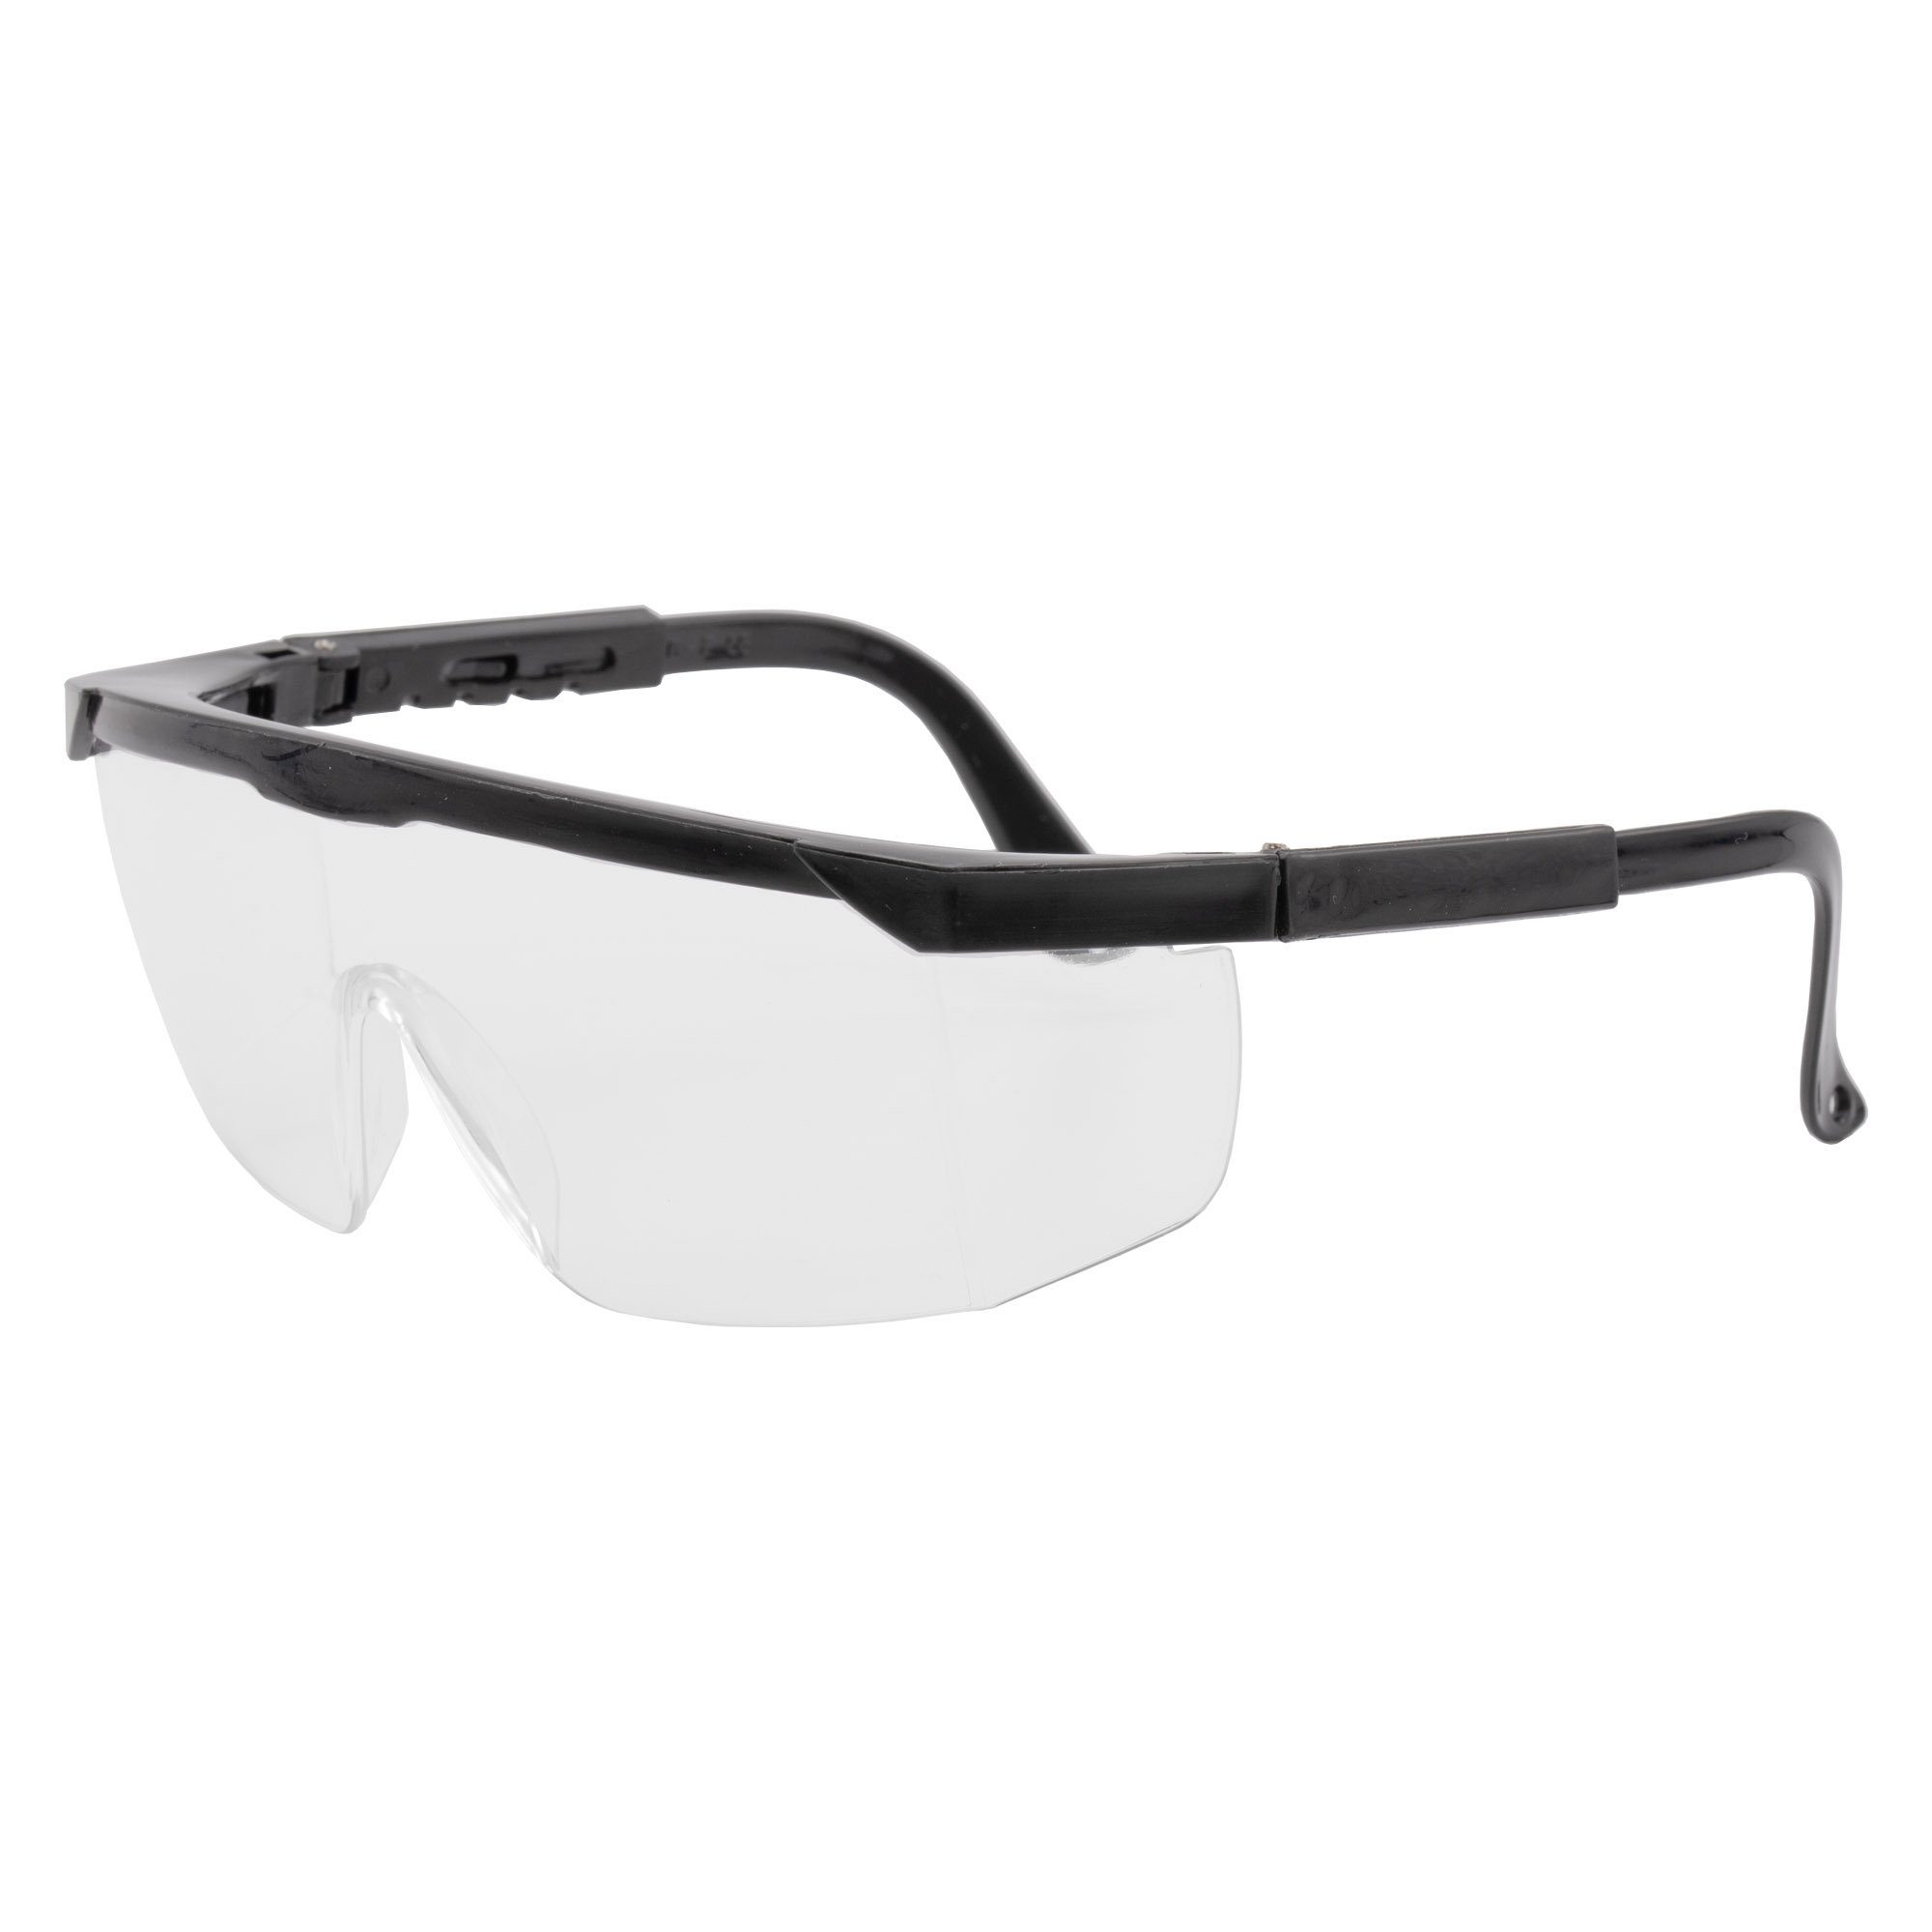 2x Arbeitsschutzbrille Augenschutz, Arbeitsschutzbrille, Sicherheitsbrille Schutzbrille Arbeitsbrille conkor